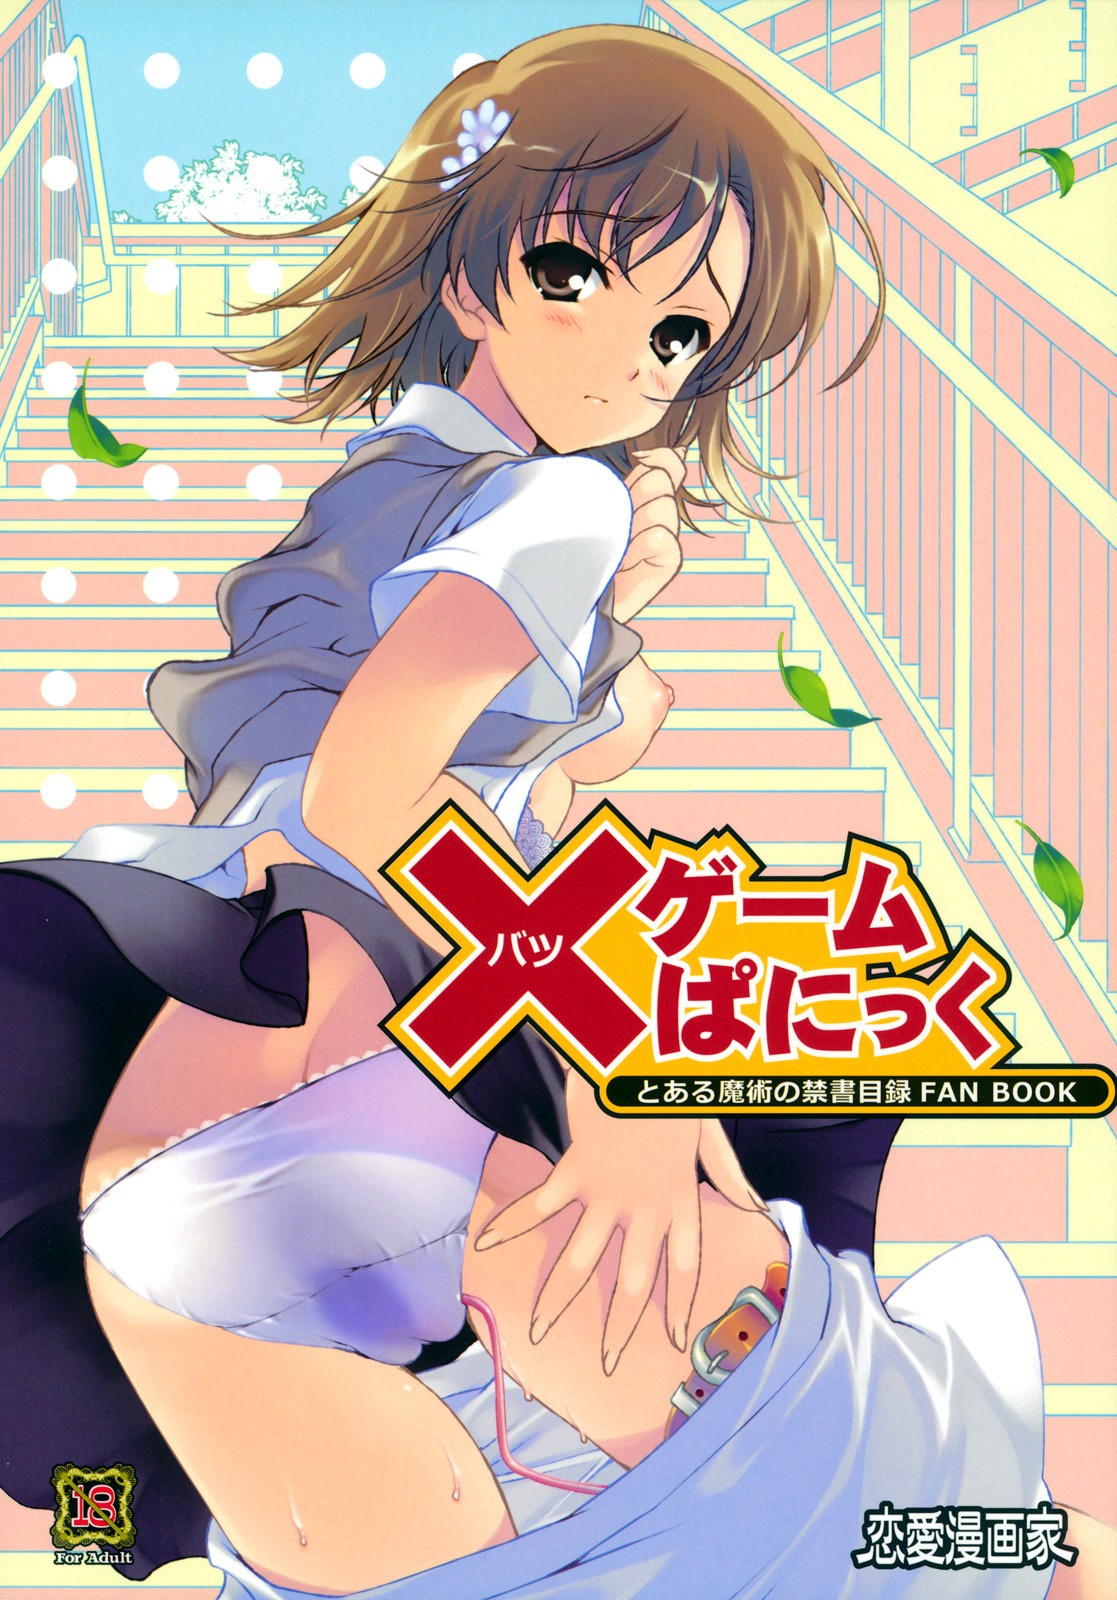 C79 Renai Mangaka Naruse Hirofumi x Game Panic Toaru Majutsu no Index English Tigoris Translates00